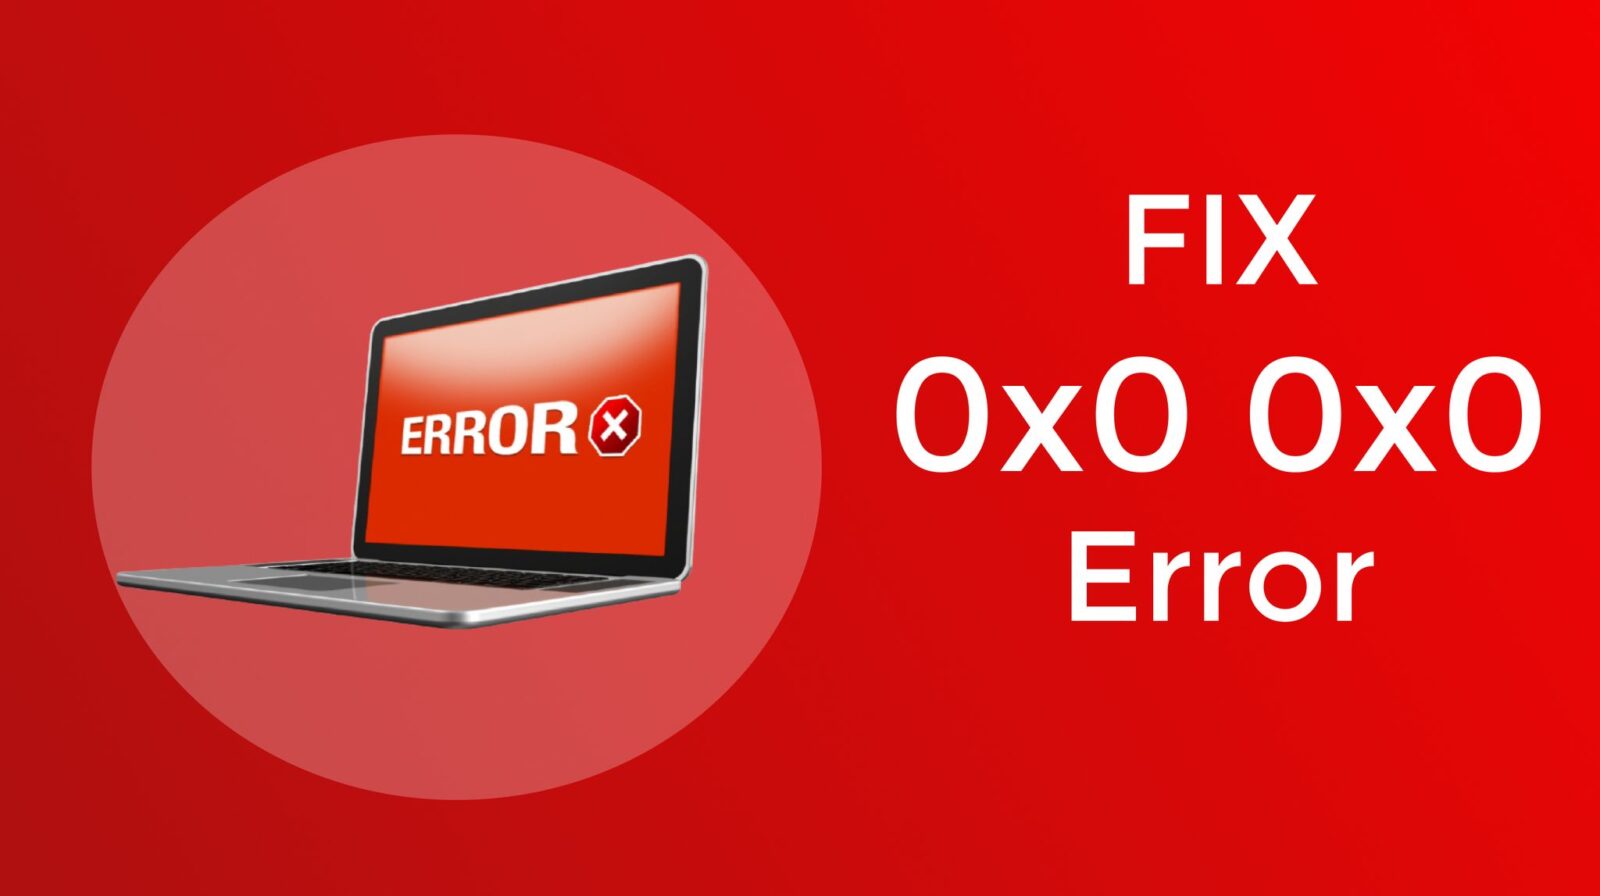 Fix 0x0 0x0 Error